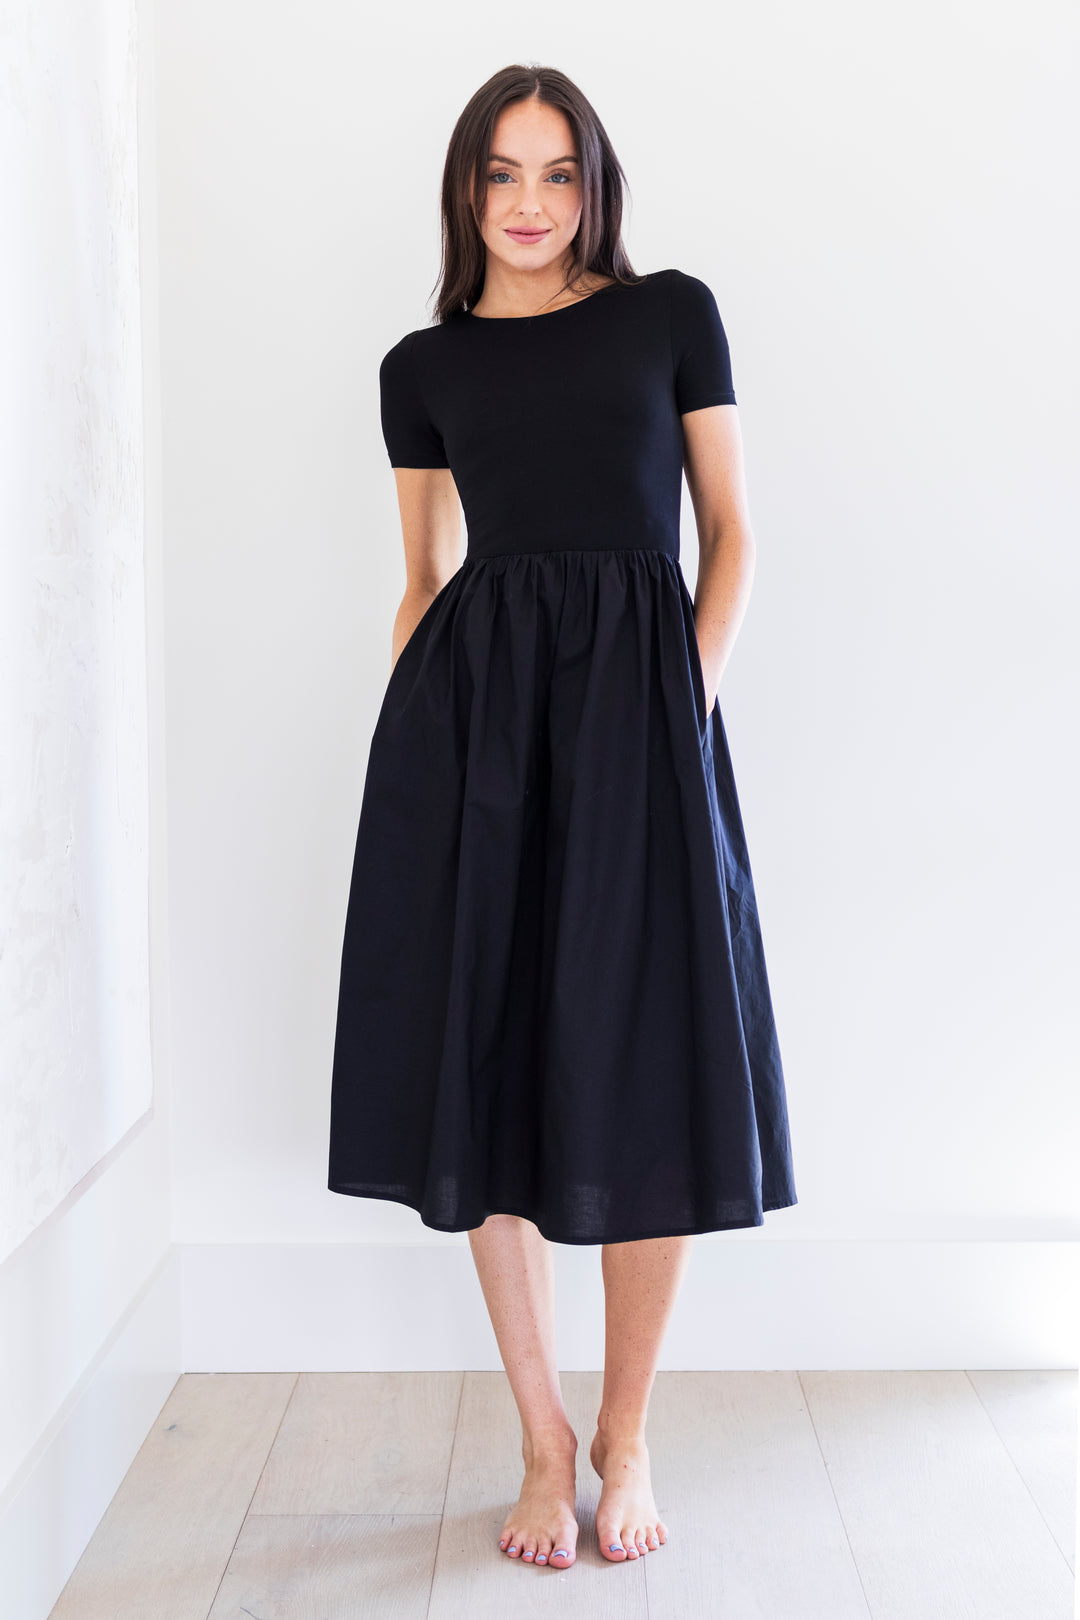 Alyce Short Sleeve Midi Poplin Dress in Black